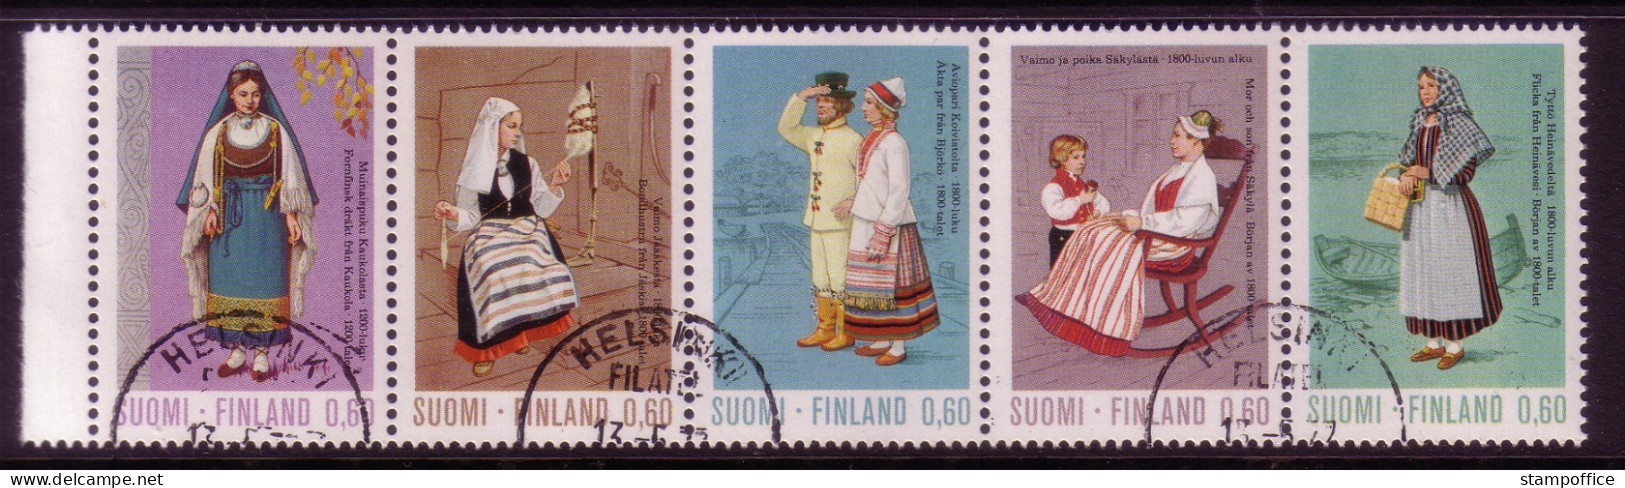 FINNLAND MI-NR. 733-737 GESTEMPELT(USED) 5er Streifen TRACHTEN 1973 - Used Stamps